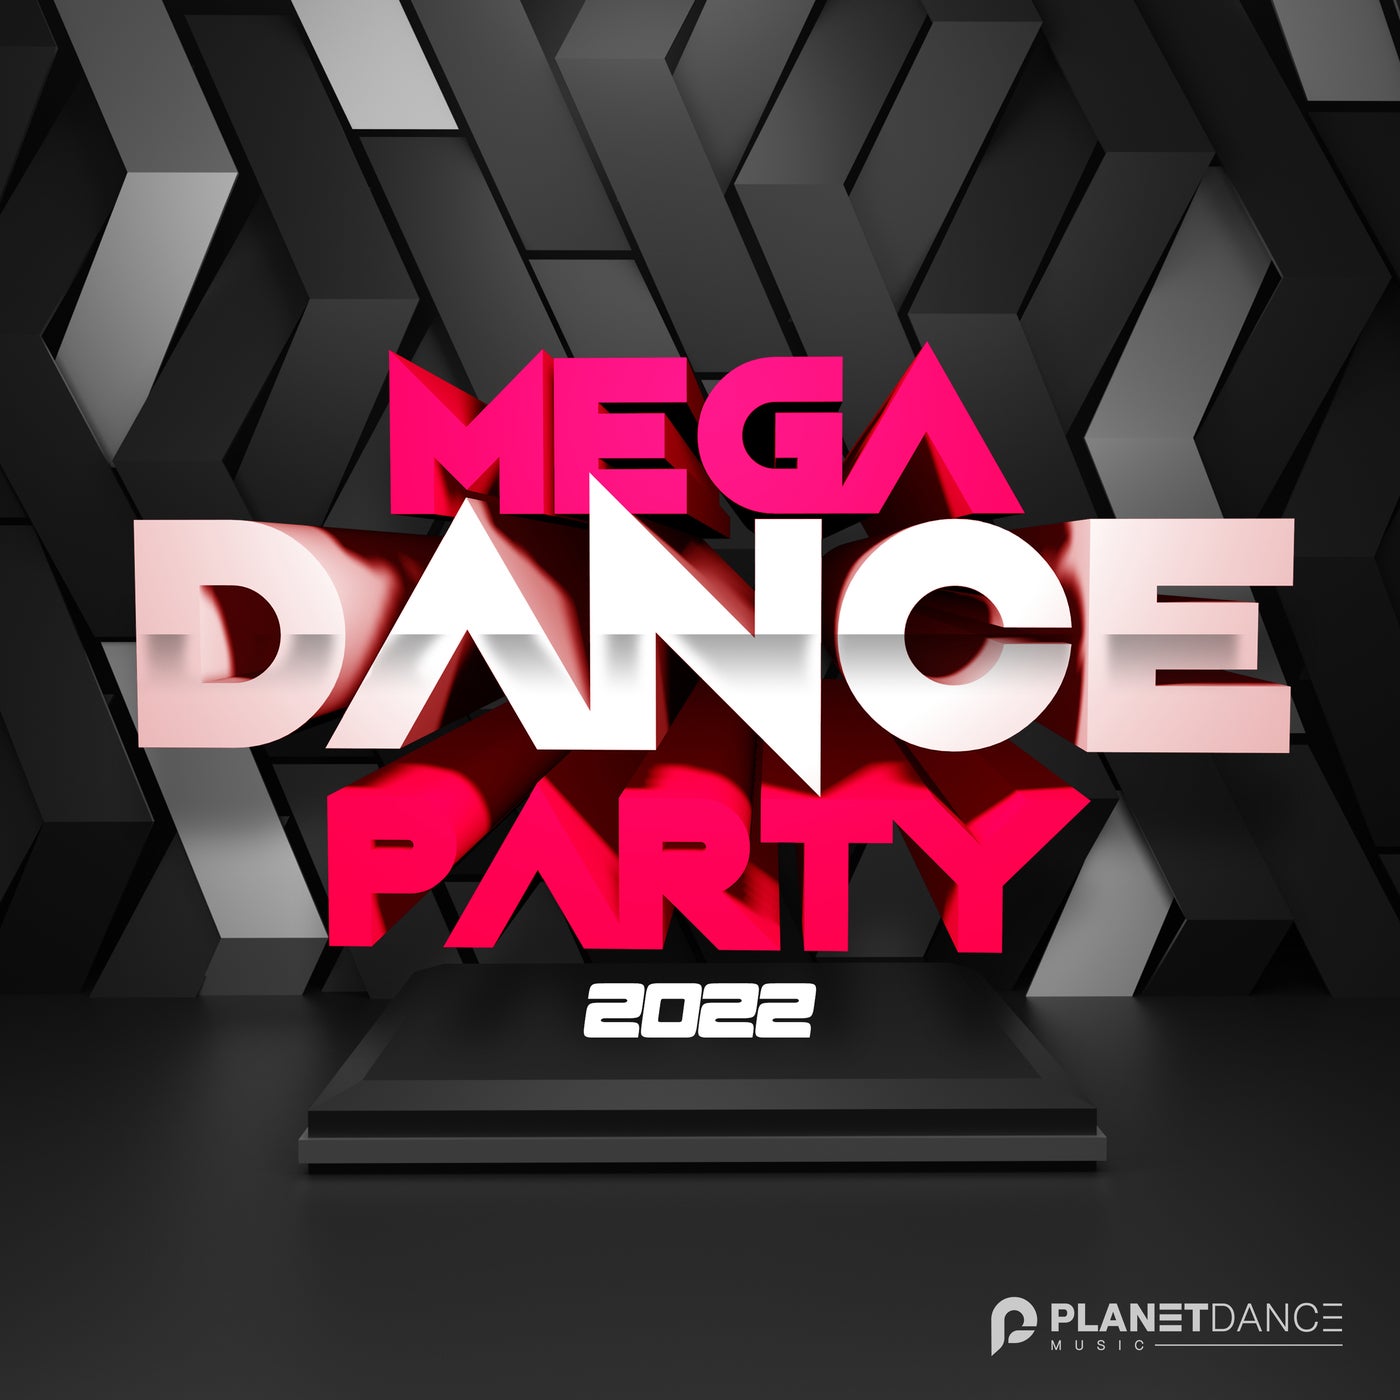 ギフト DANCE MEGA HOUSE/DANCE 1300DRUMLOOPS - ソフトウェア音源